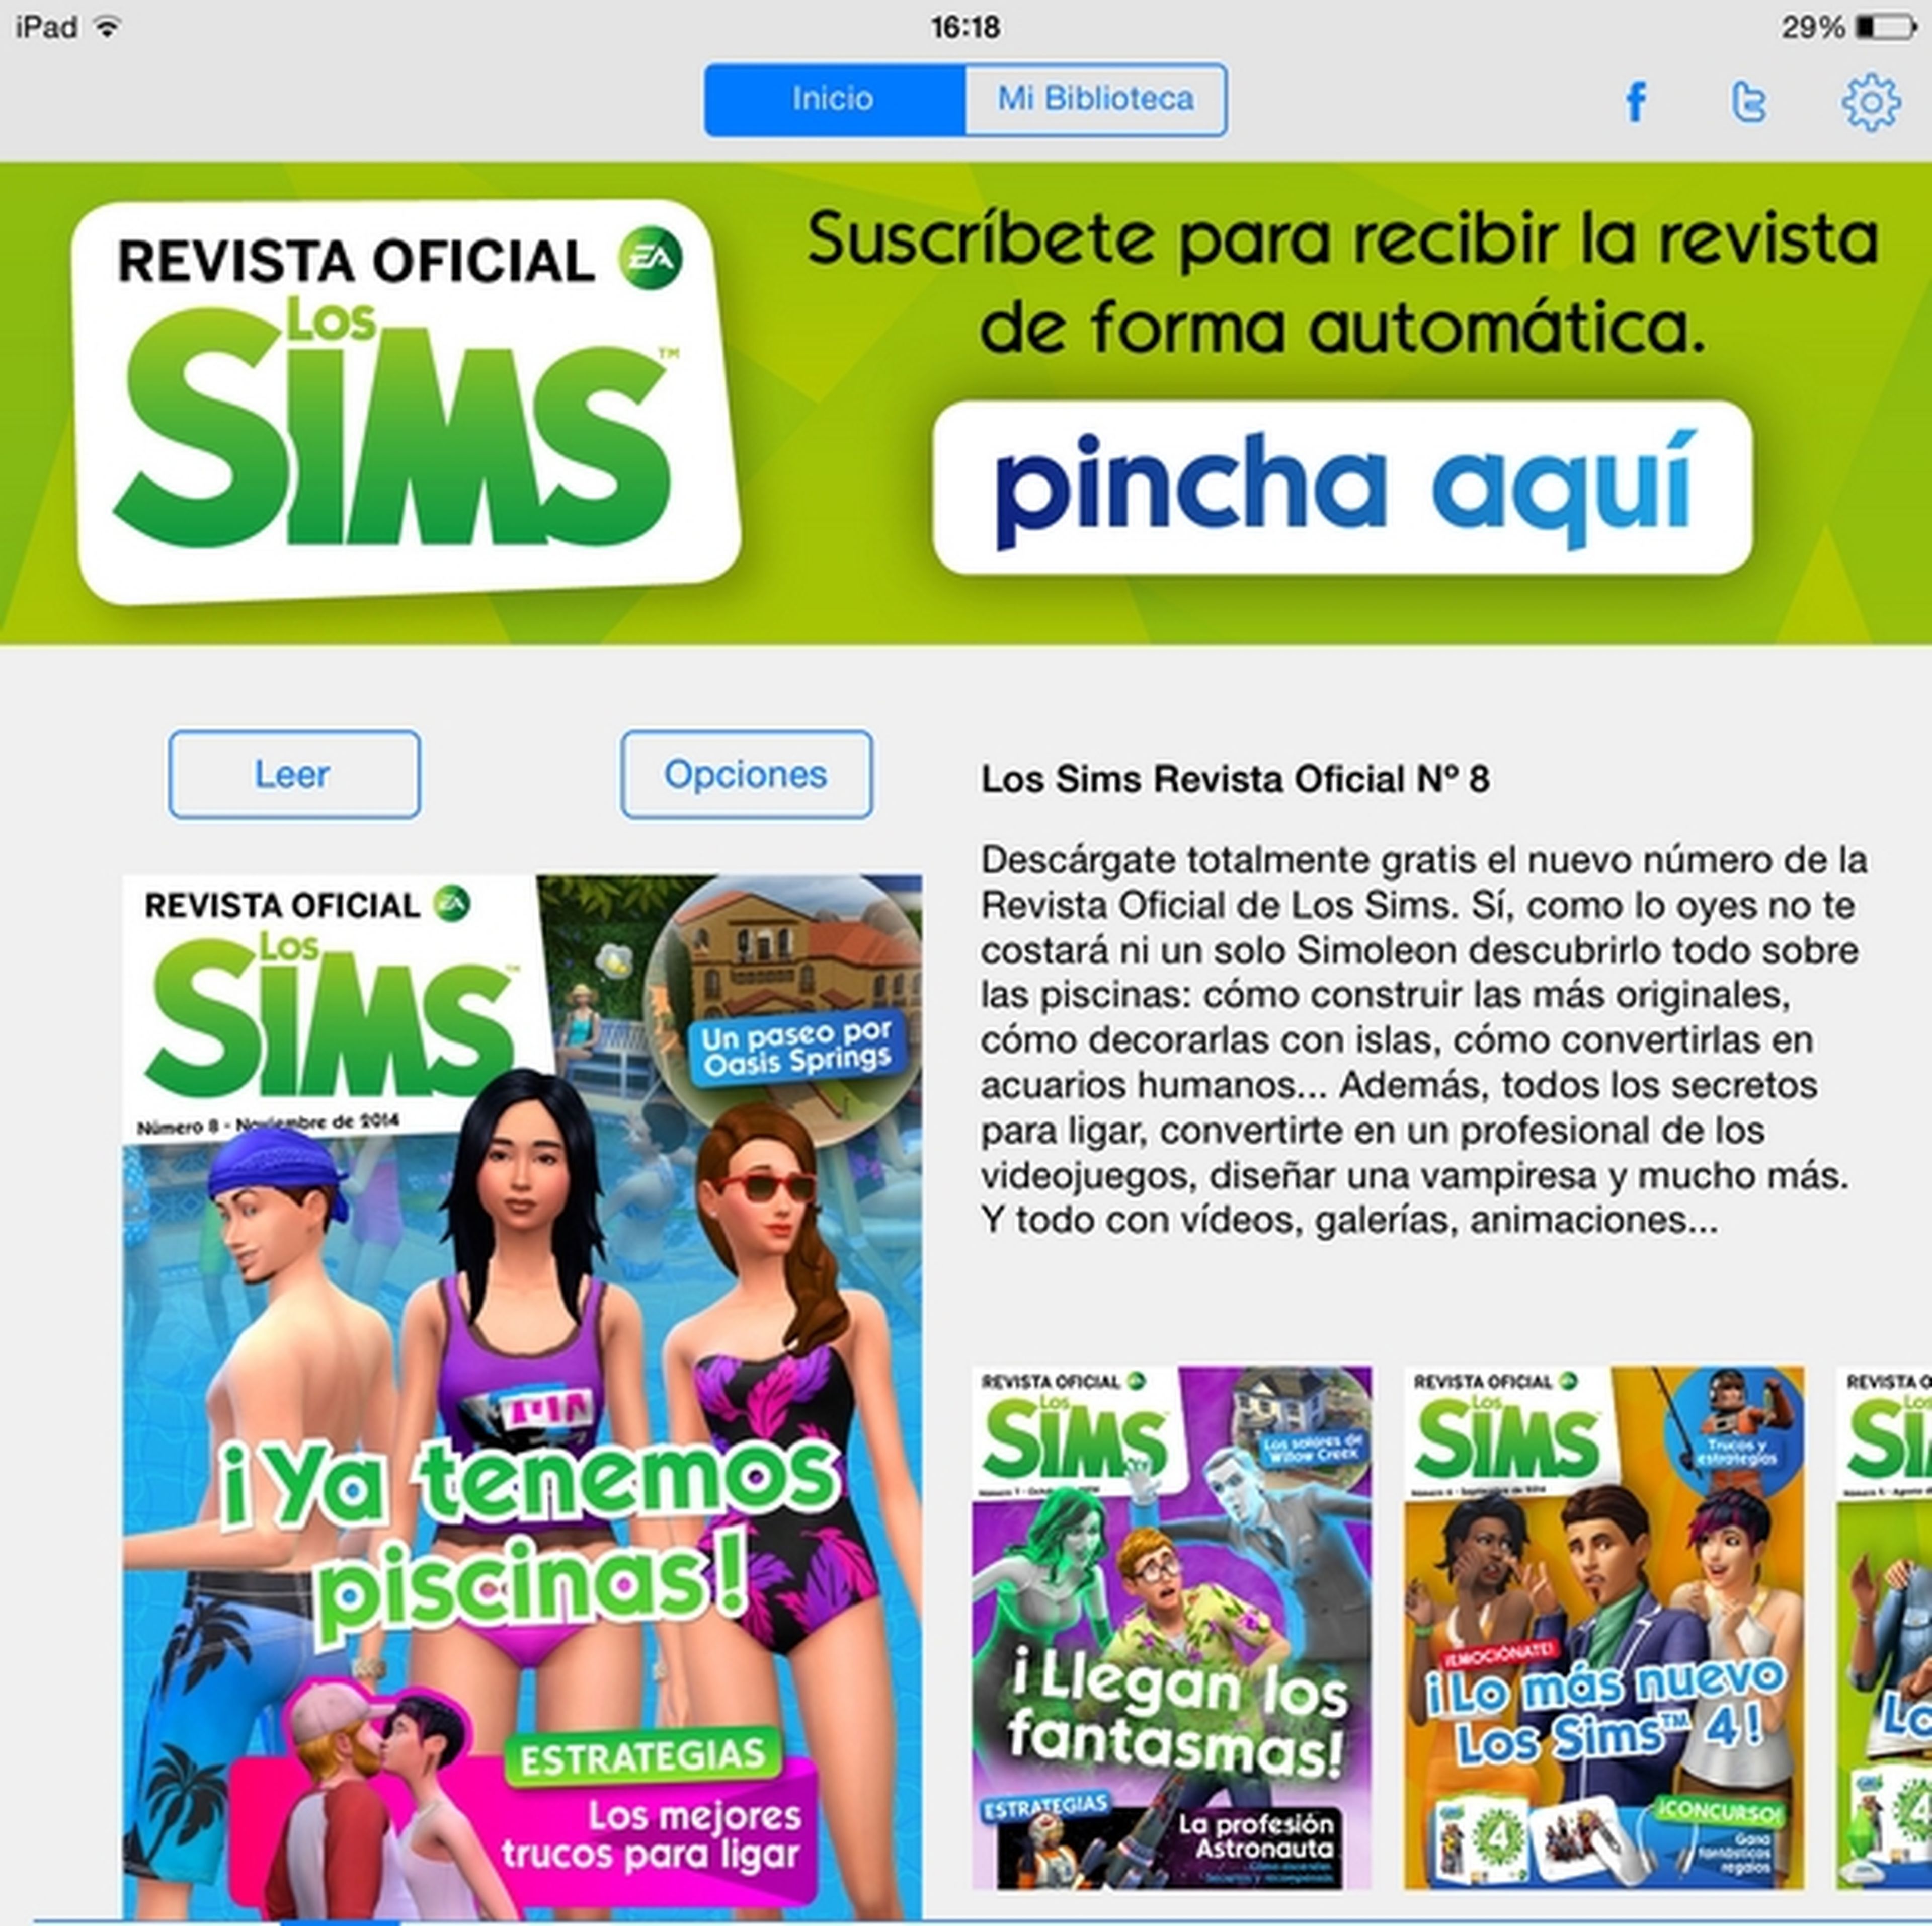 Revista Oficial de Los Sims número 8